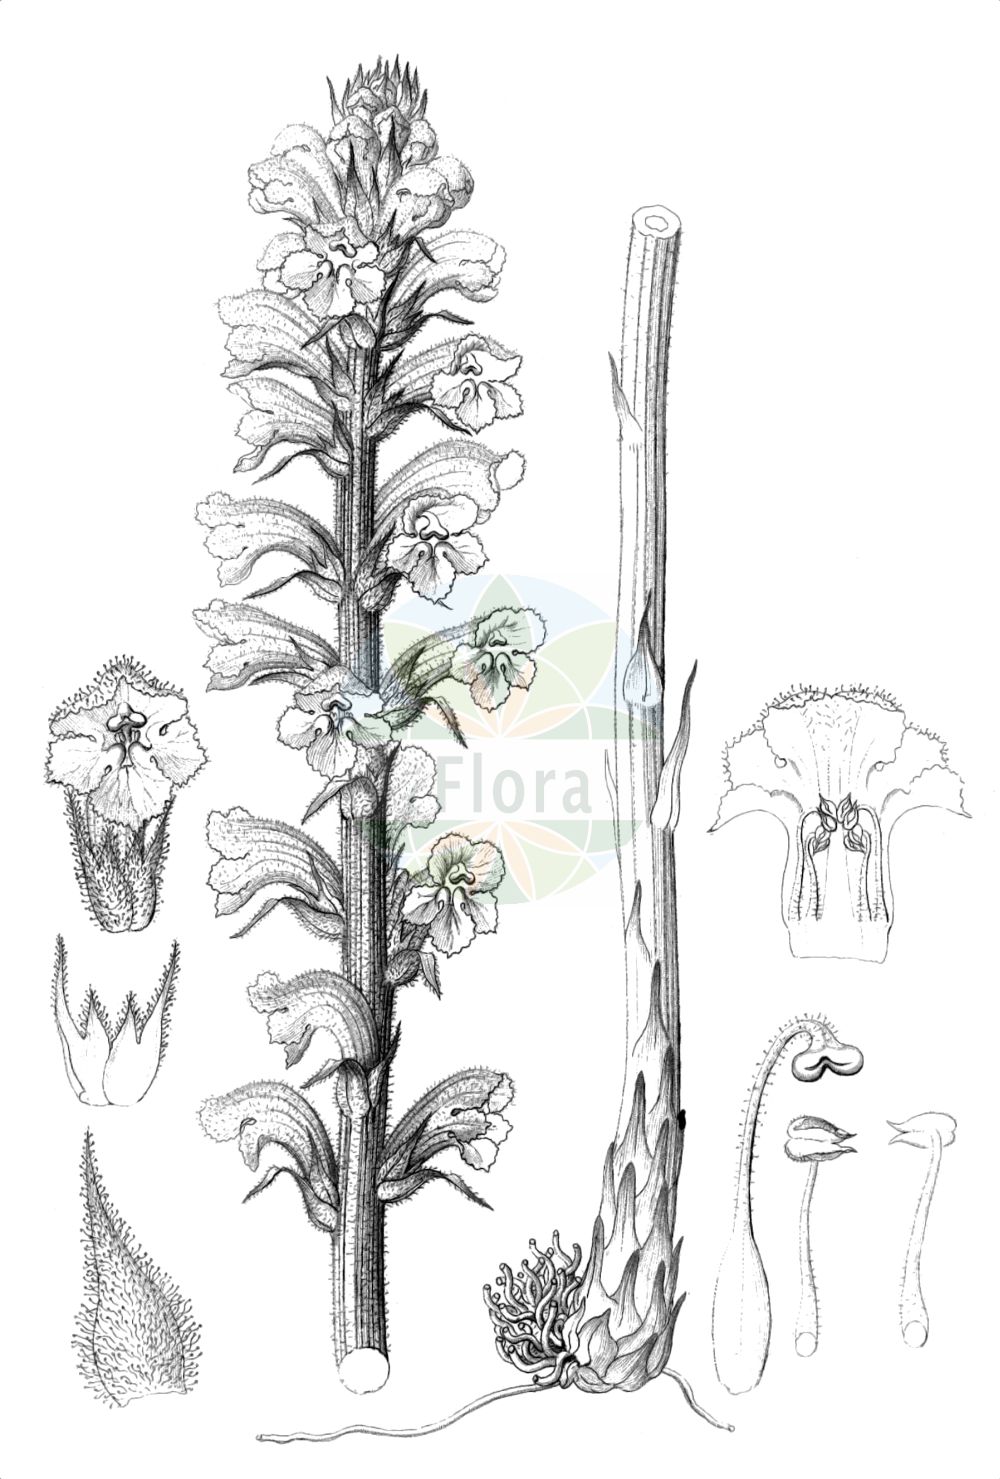 Historische Abbildung von Orobanche elatior (Große Sommerwurz - Knapweed Broomrape). Das Bild zeigt Blatt, Bluete, Frucht und Same. ---- Historical Drawing of Orobanche elatior (Große Sommerwurz - Knapweed Broomrape). The image is showing leaf, flower, fruit and seed.(Orobanche elatior,Große Sommerwurz,Knapweed Broomrape,Orobanche echinopis,Orobanche elatior,Orobanche icterica,Orobanche loscosii,Orobanche ritro,Grosse Sommerwurz,Knapweed Broomrape,Tall Broomrape,Orobanche,Sommerwurz,Broomrape,Orobanchaceae,Sommerwurzgewächse,Broomrape family,Blatt,Bluete,Frucht,Same,leaf,flower,fruit,seed,Reichenbach (1823-1832))